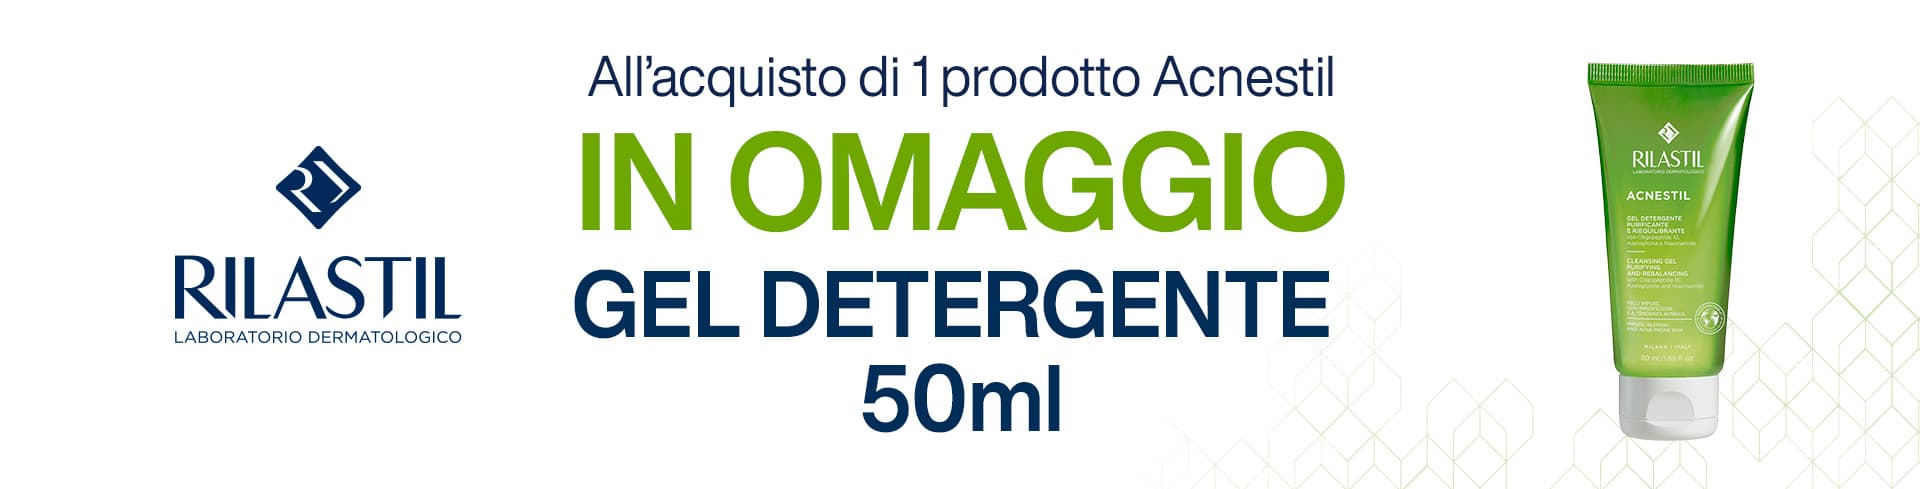 Acquista 1 prodotto Rilastil Acnestil e ricevi in omaggio il Gel Detergente 50ml!